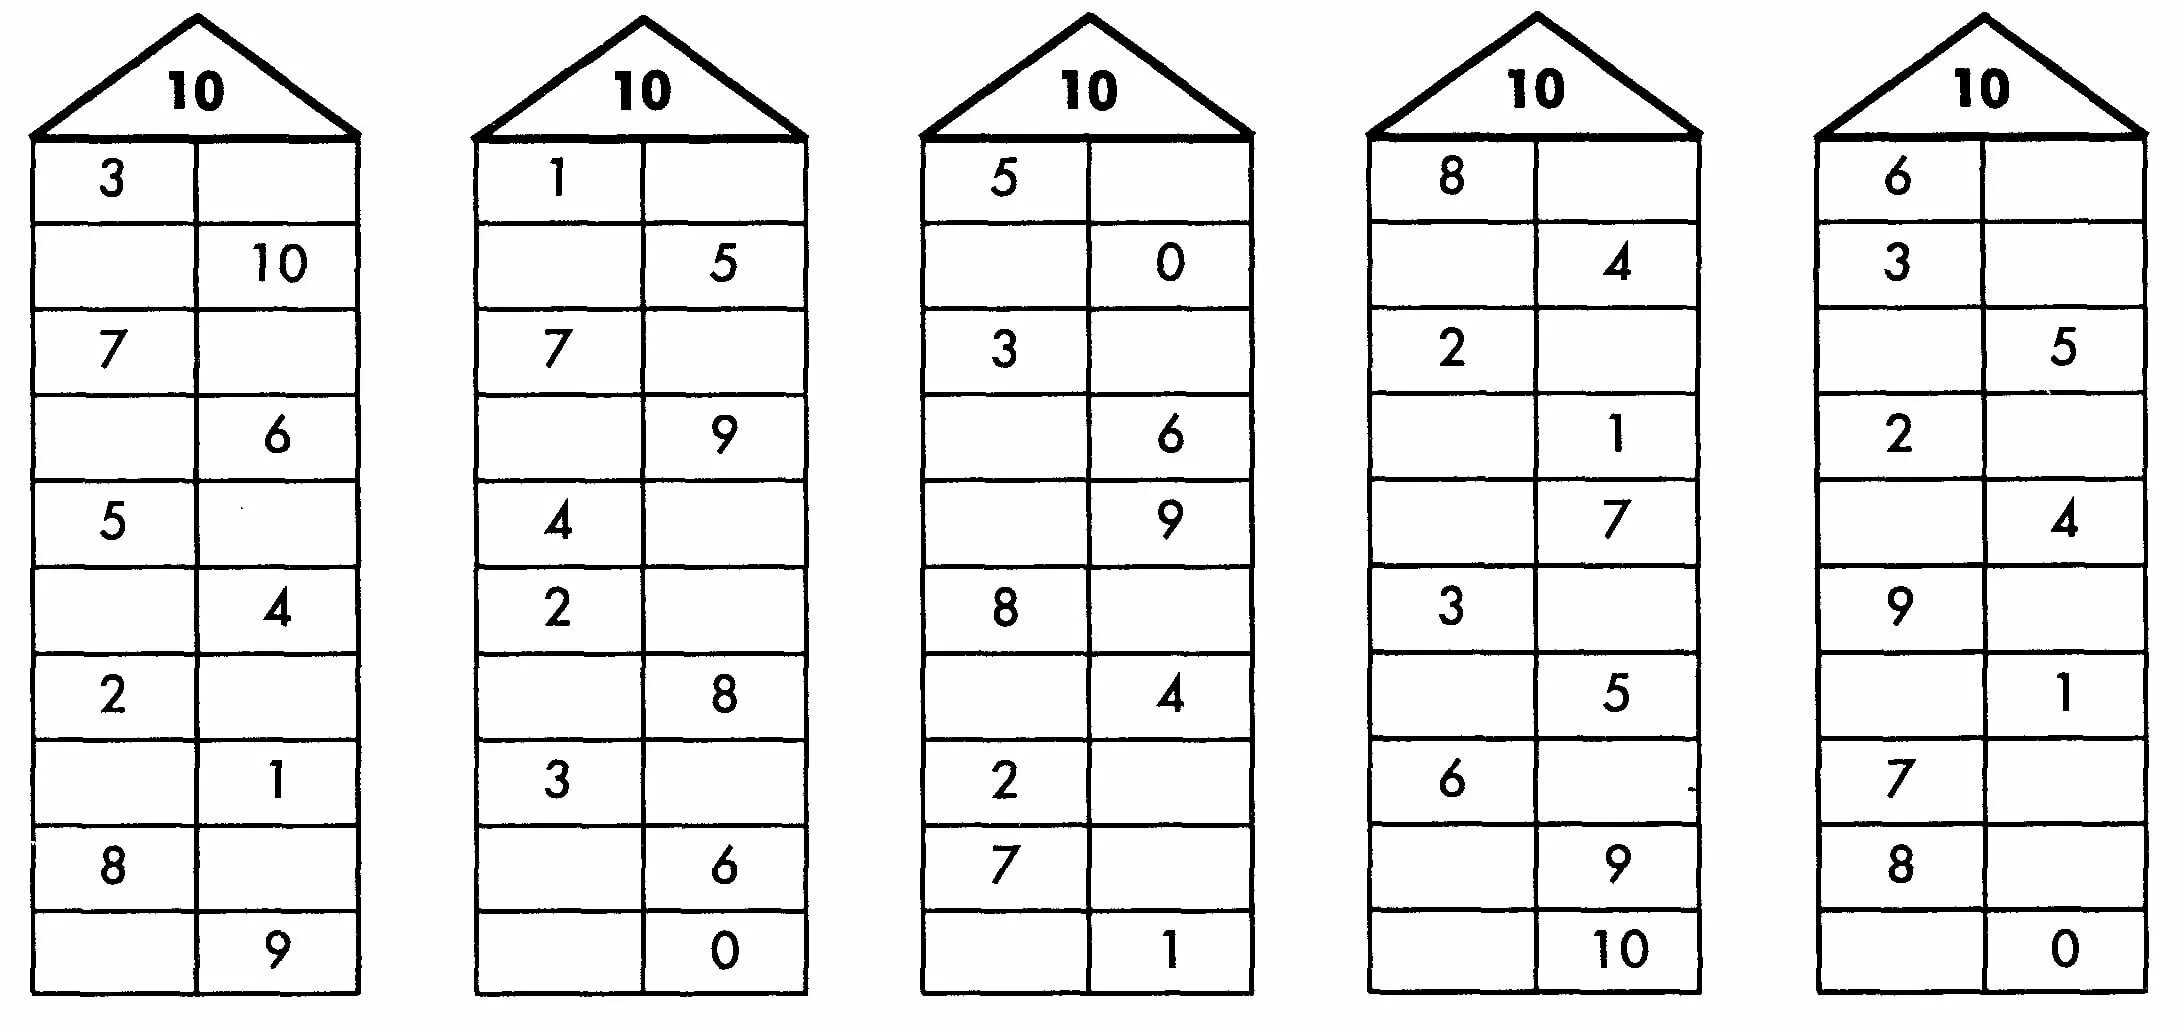 Таблица состава числа до 10 распечатать домики. Состав числа 10 числовые домики. Состав числа до 10 домики. Числовые домики задания по математике для дошкольников. Числовые домики состав числа до 10.